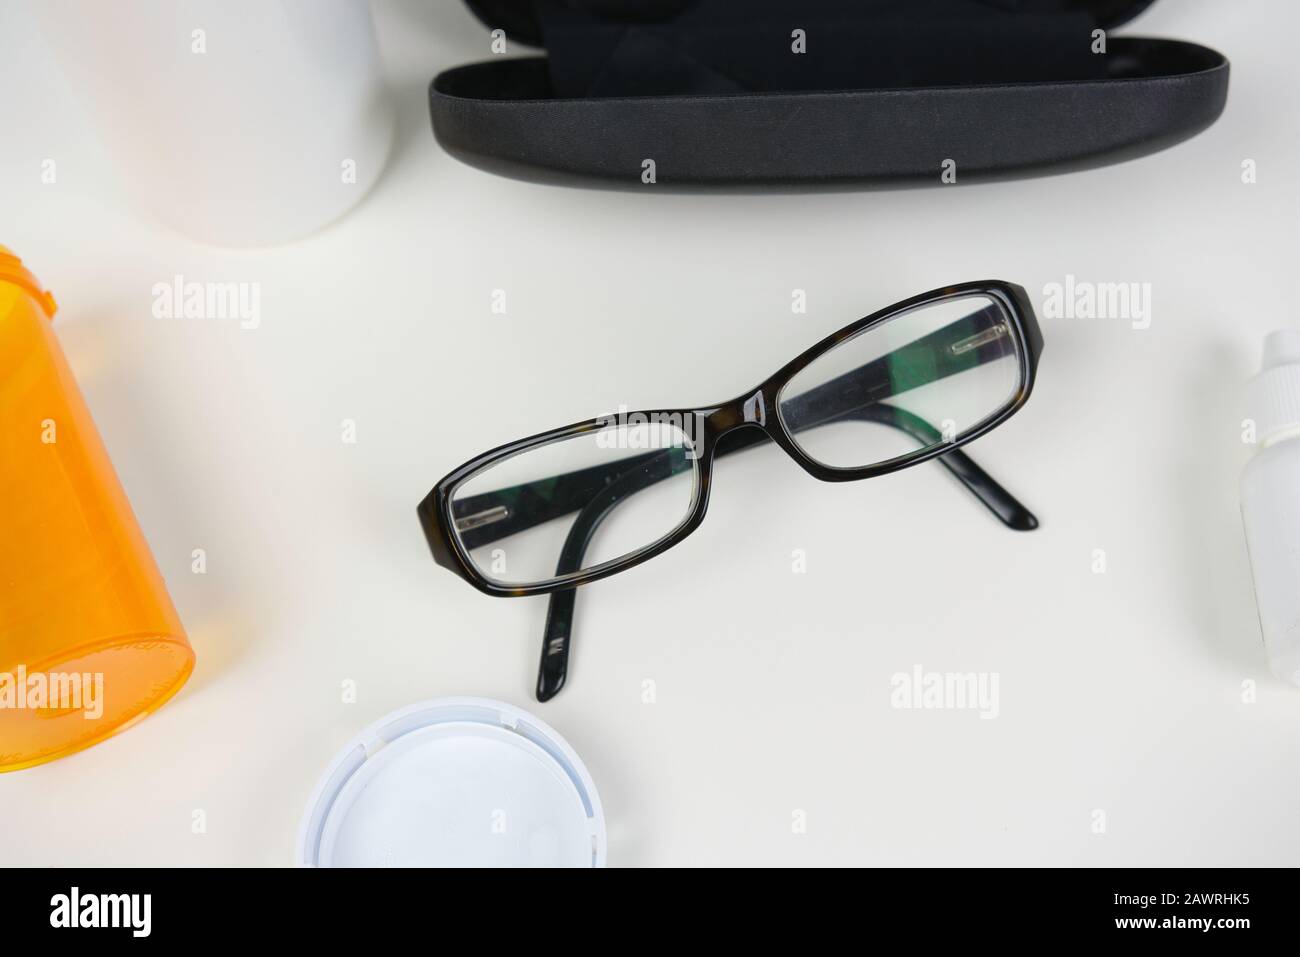 Lunettes sur comptoir blanc avec divers produits de soin des yeux. Pose plate de fournitures médicales pour les soins de la vision Banque D'Images